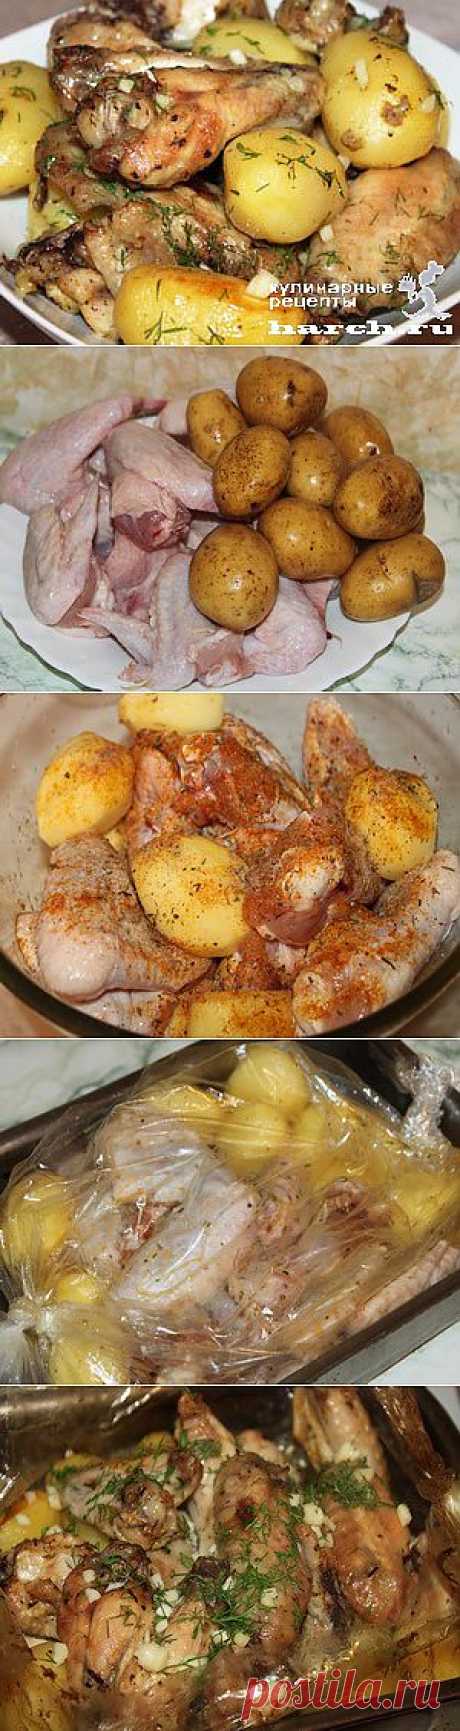 Куриные крылышки с молодым картофелем в рукаве  |  Харч.ру  - рецепты для любителей вкусно поесть